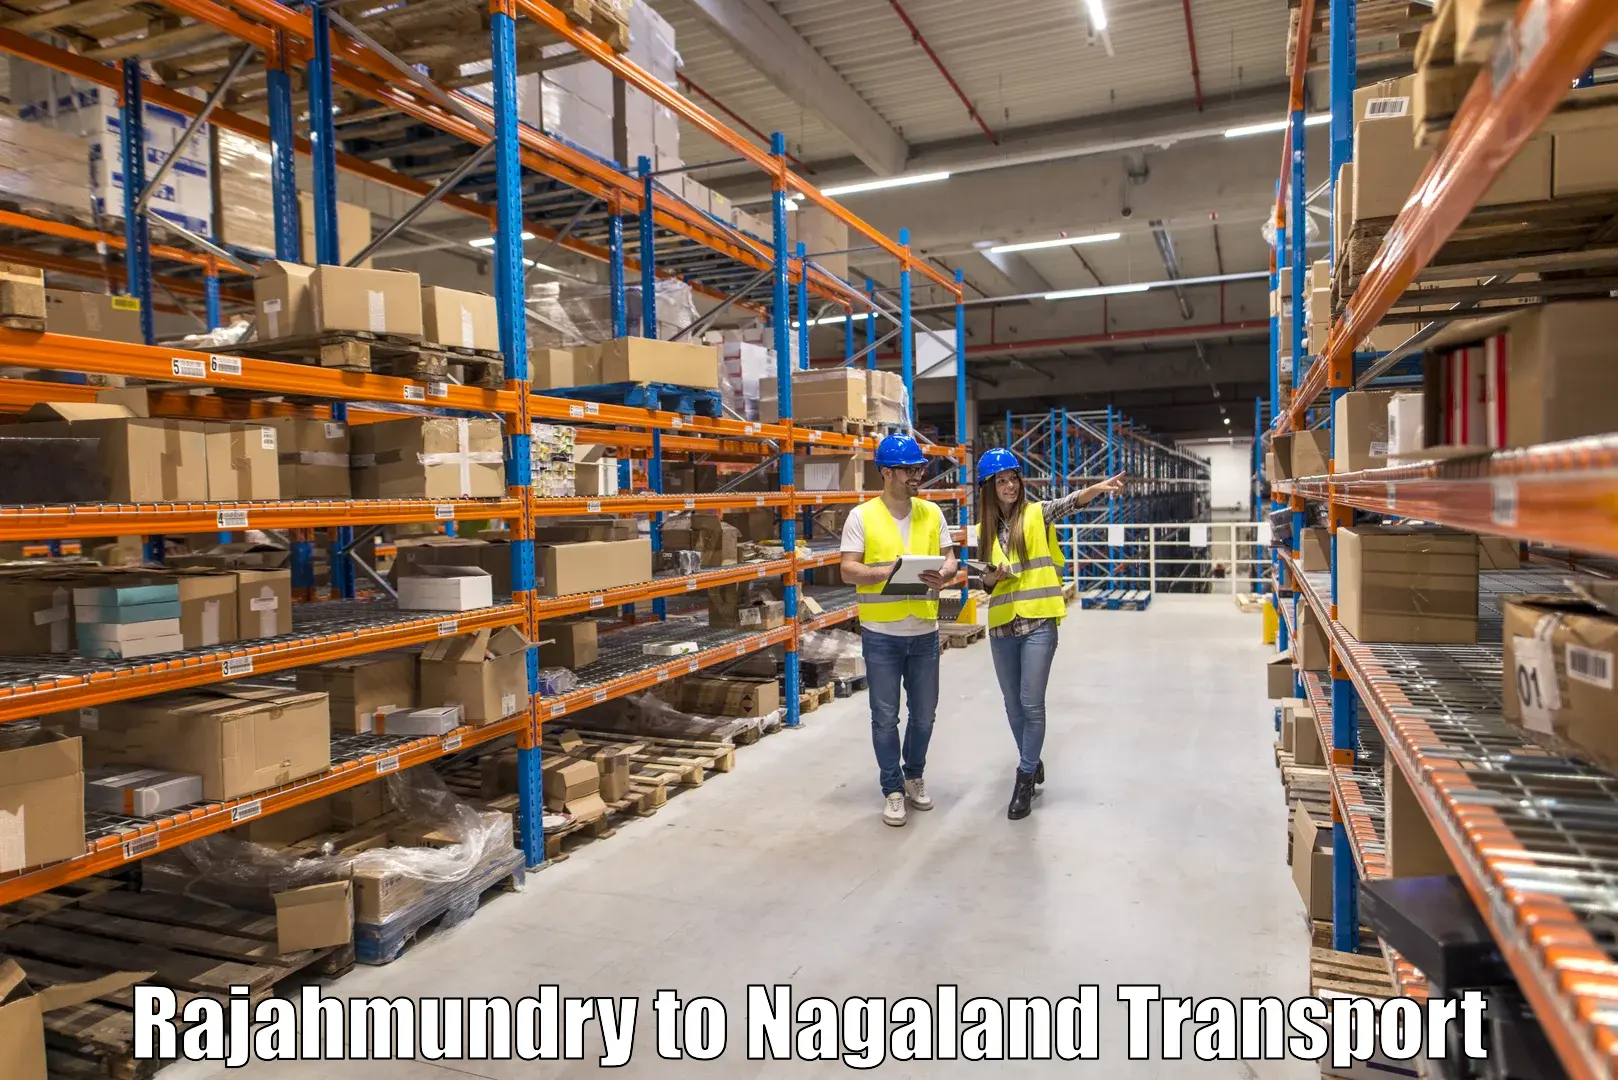 Lorry transport service Rajahmundry to Longleng